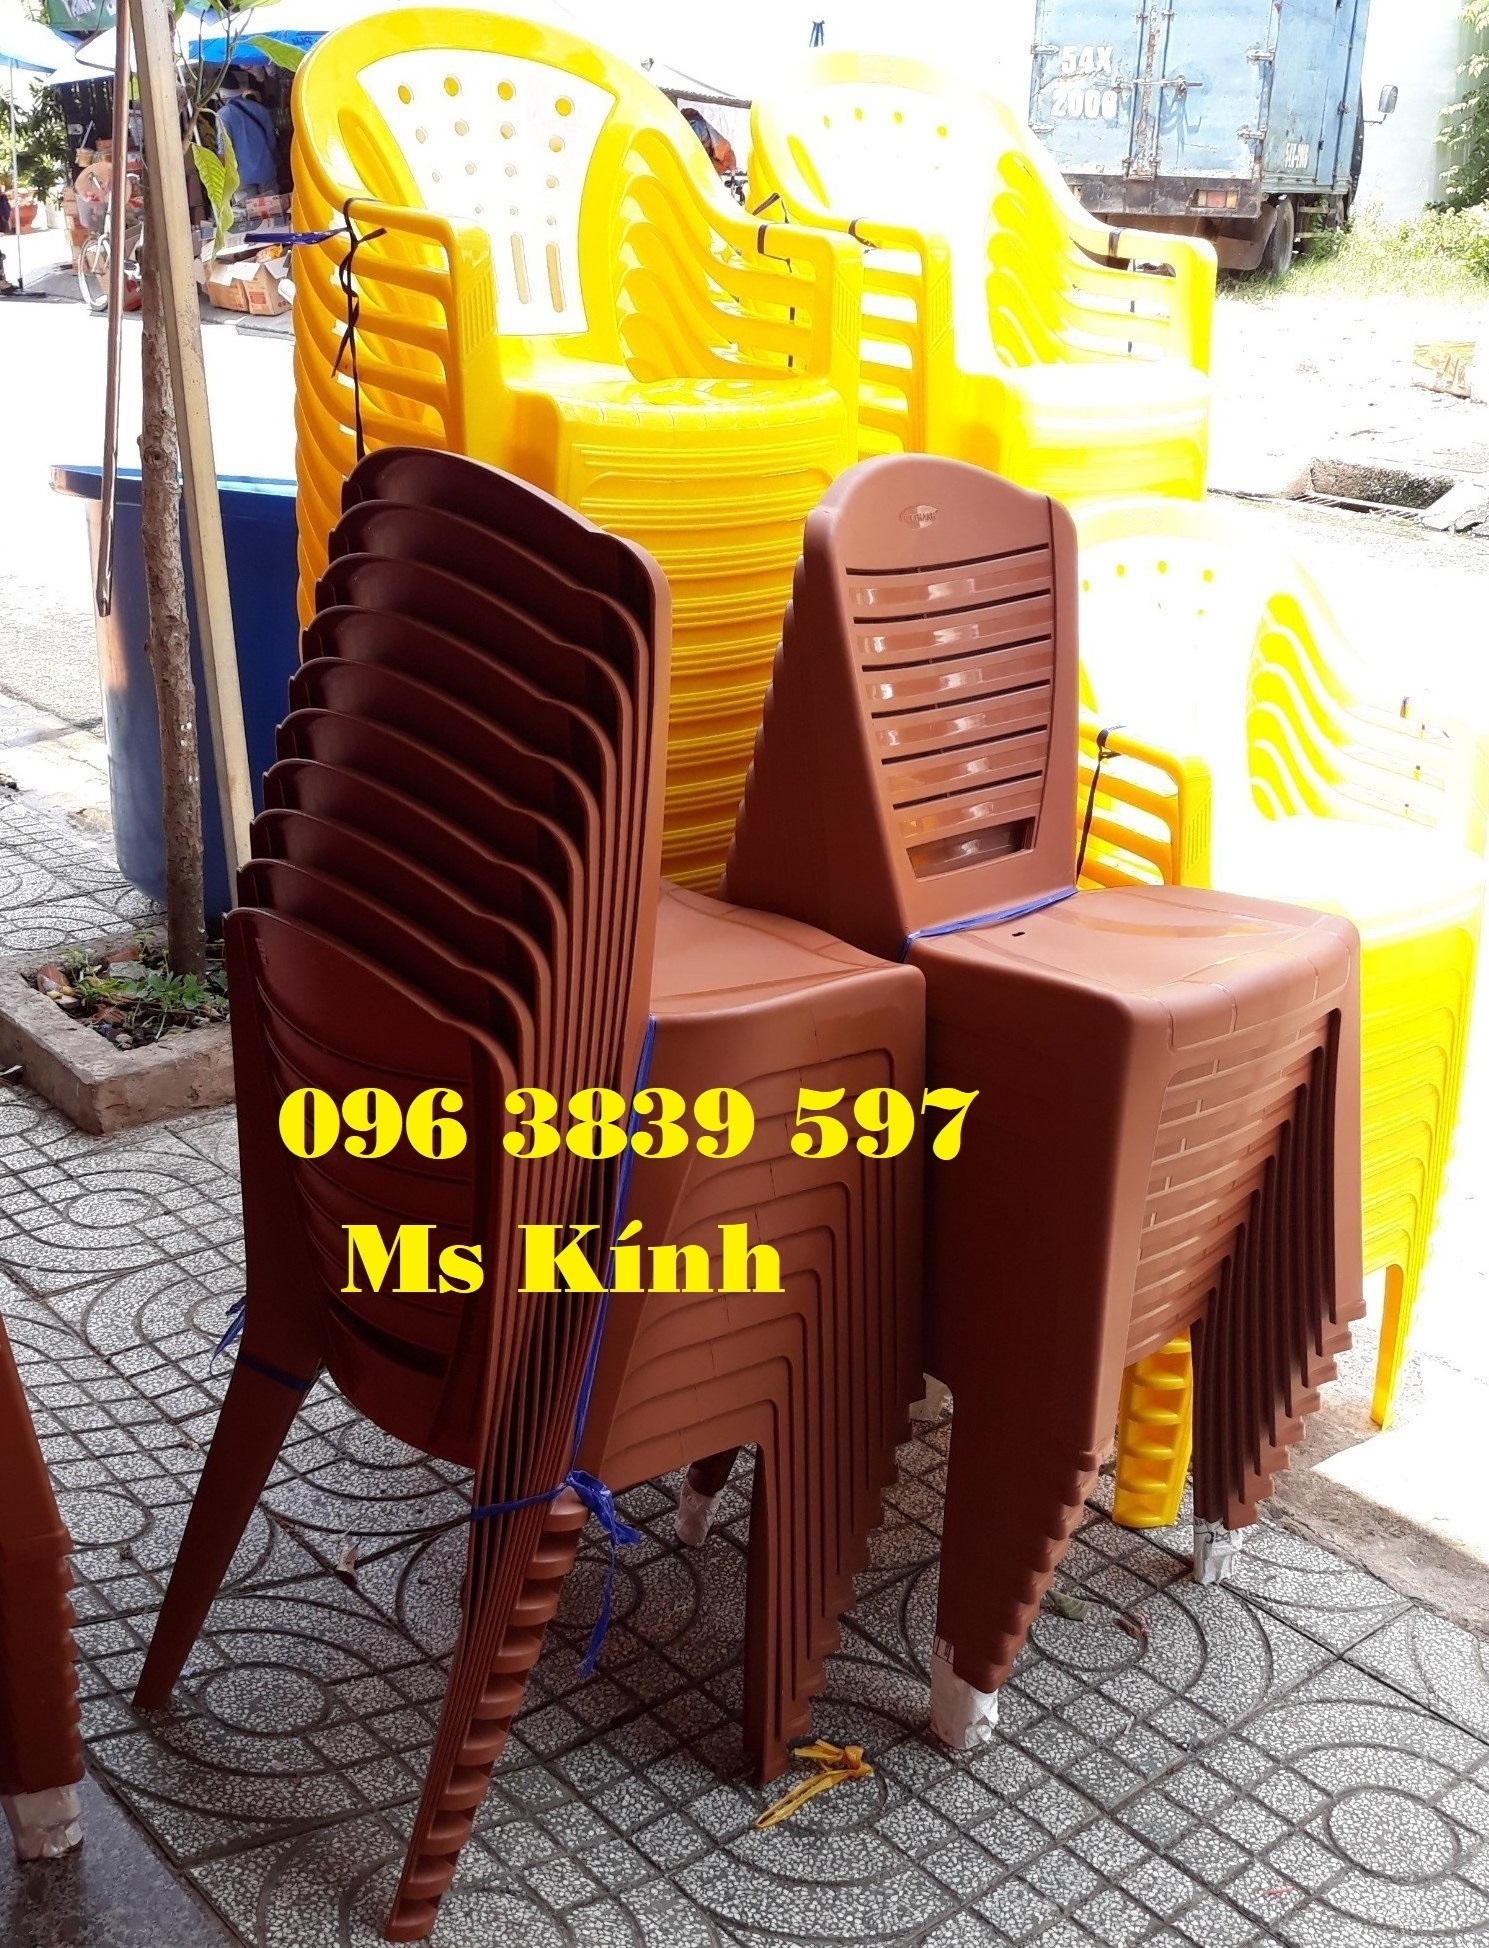 Ghế dựa đại vita, ghế nhựa giá rẻ số lượng lớn - 0963839597 Ms Kính